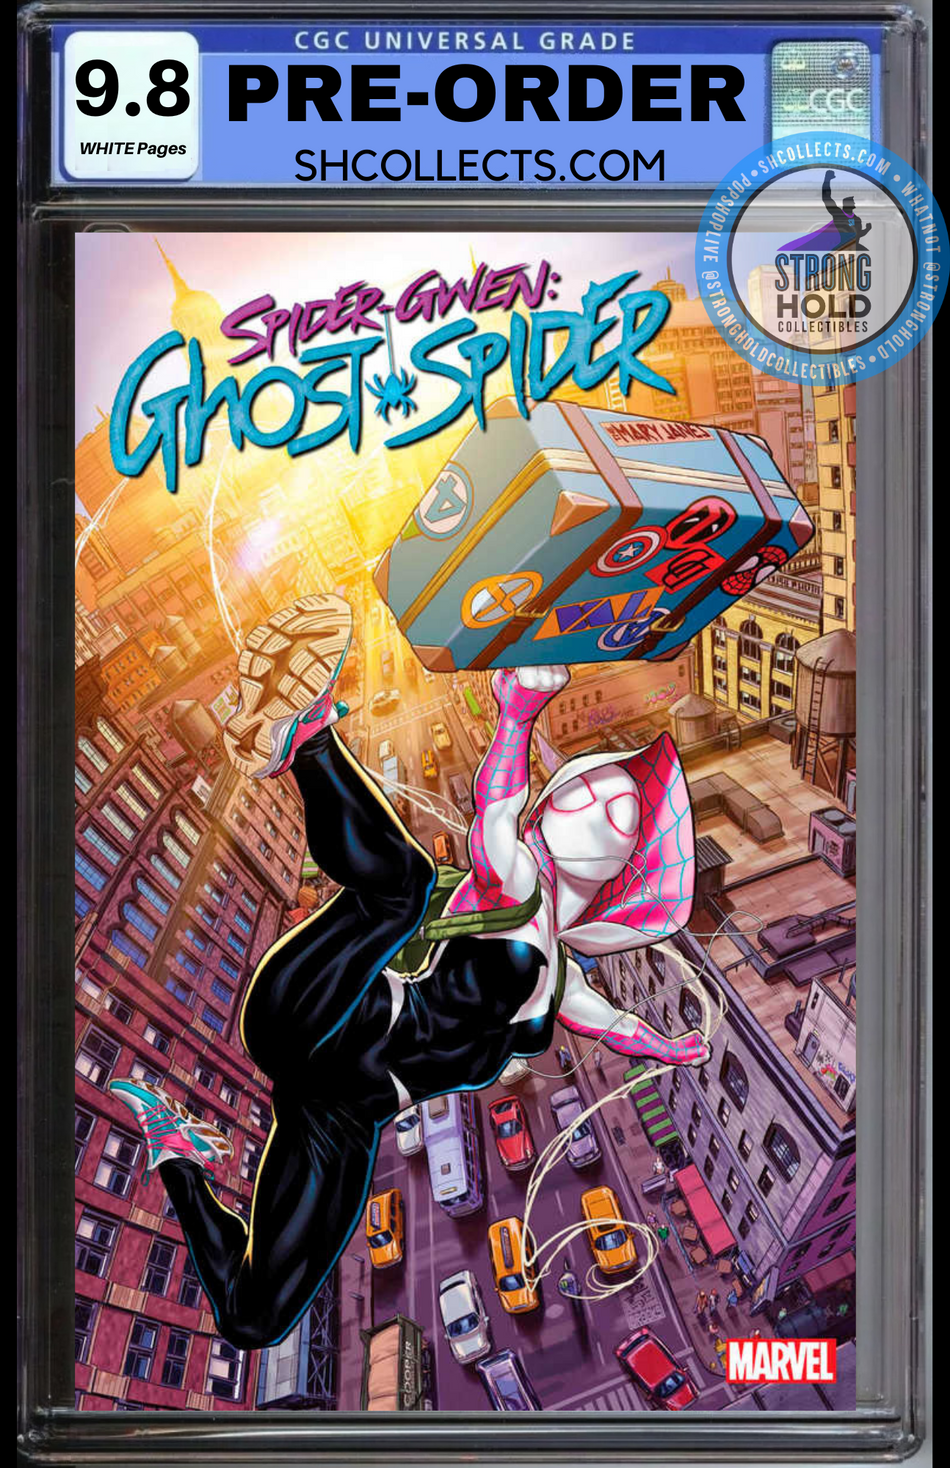 CGC 9.8 Spider-Gwen The Ghost Spider #1 PRE-ORDER